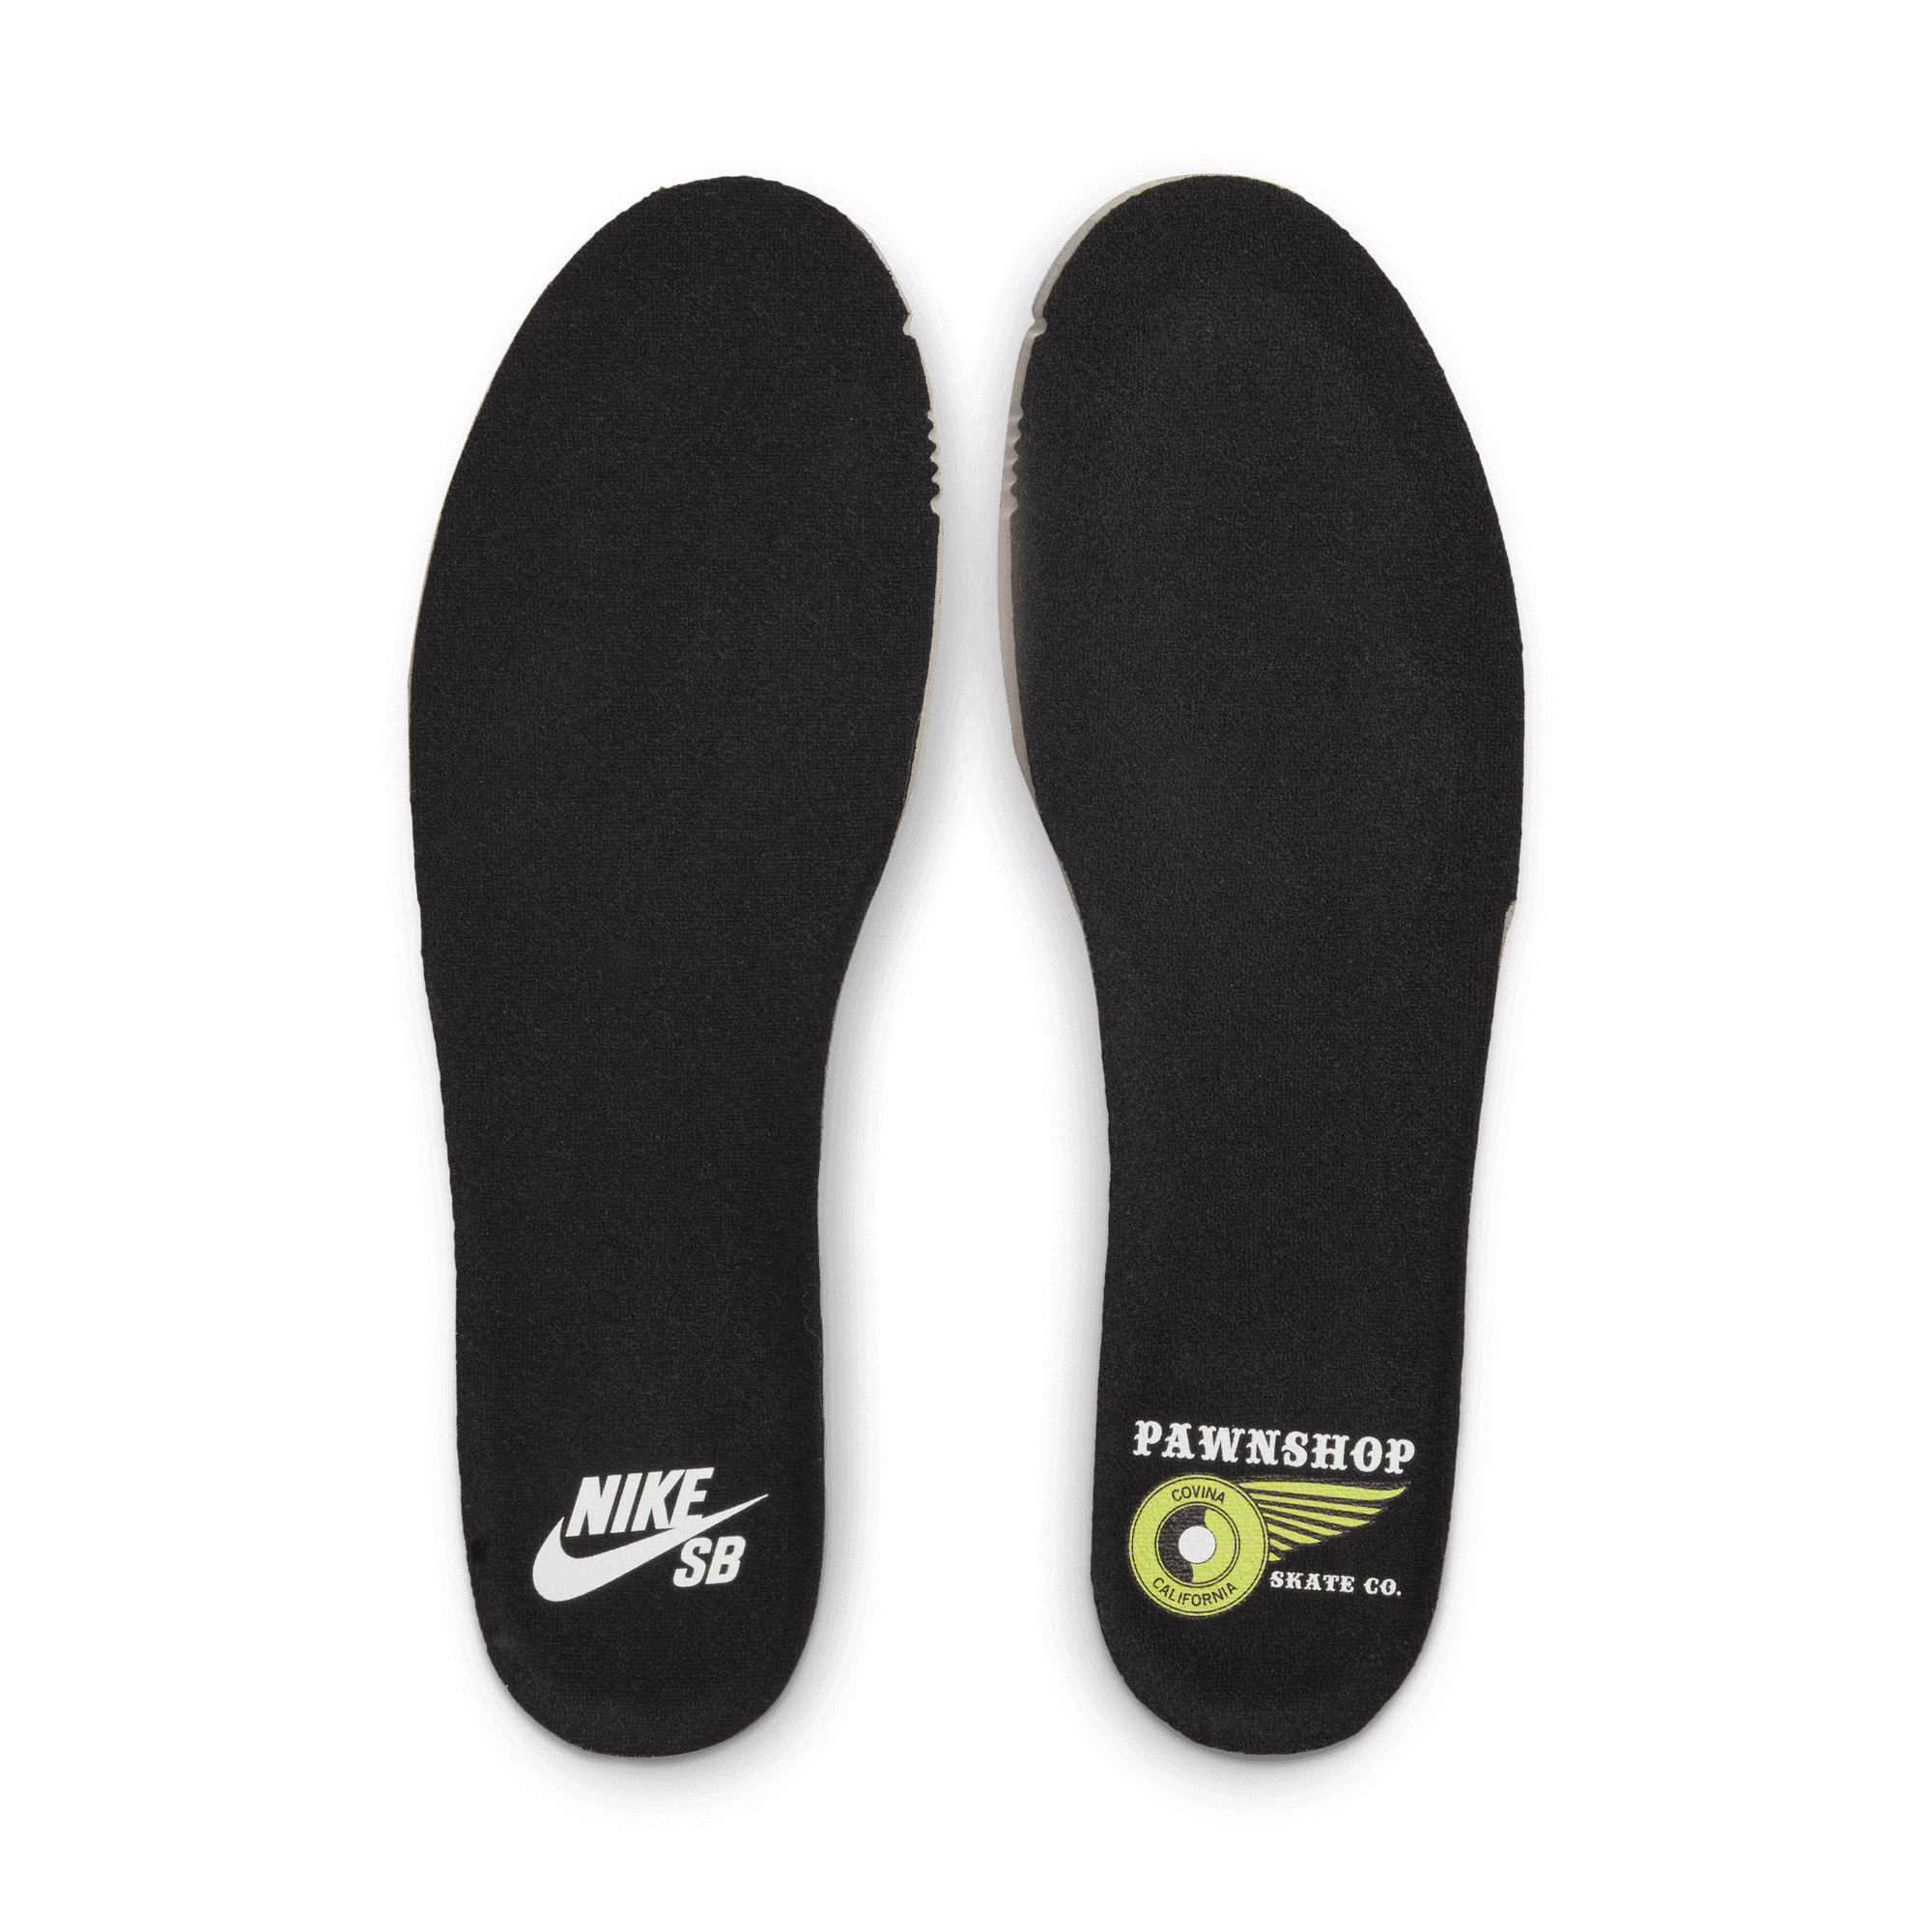 Nike SB Dunk High Pawnshop Skate Co. Old Soul Men's - FJ0445-001 - US